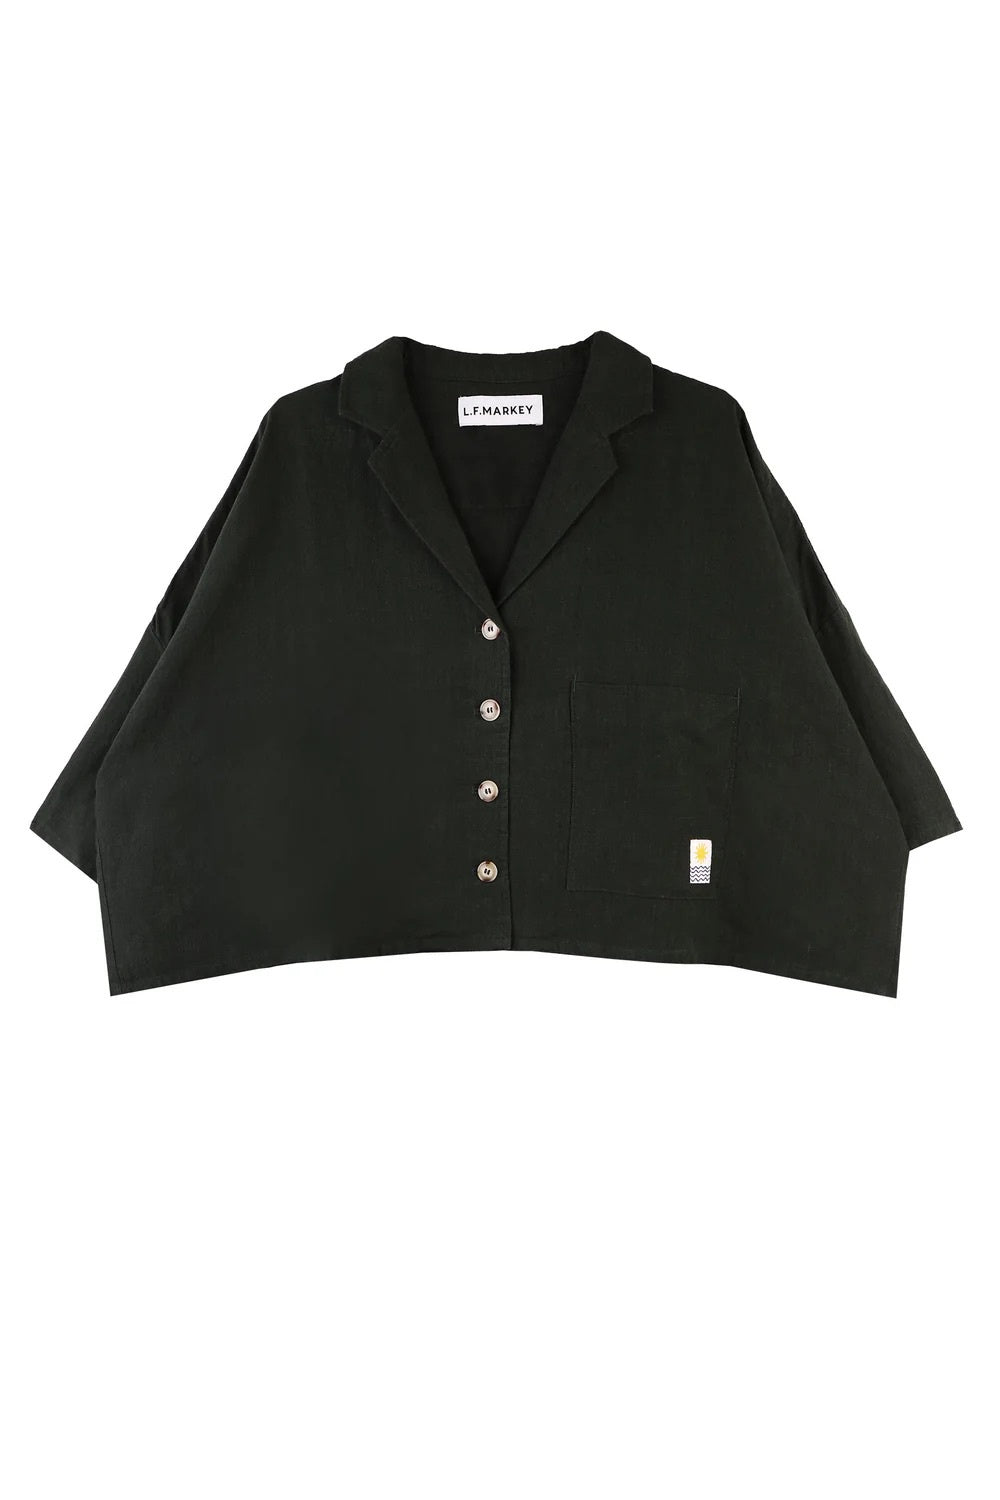 L.F Markey Maxim Black Shirt